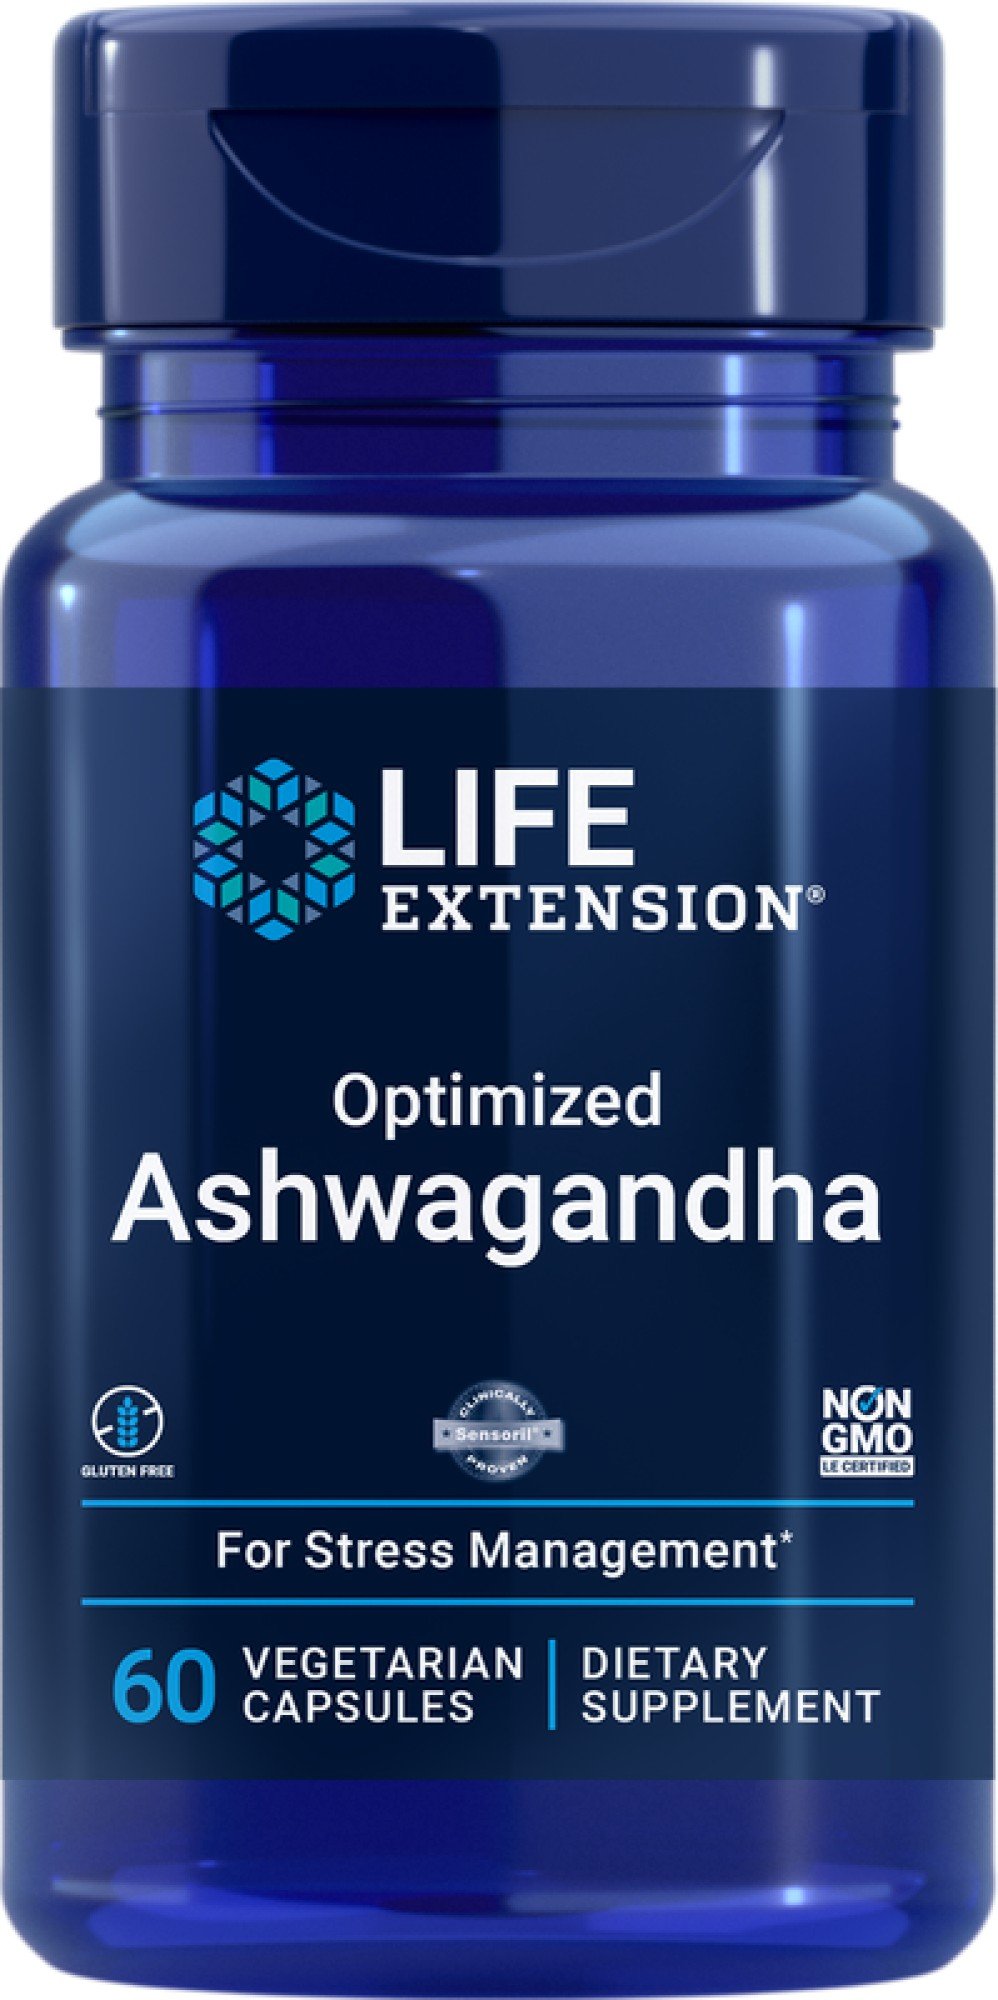 Life Extension Optimized Ashwagandha Extract 60 VegCap